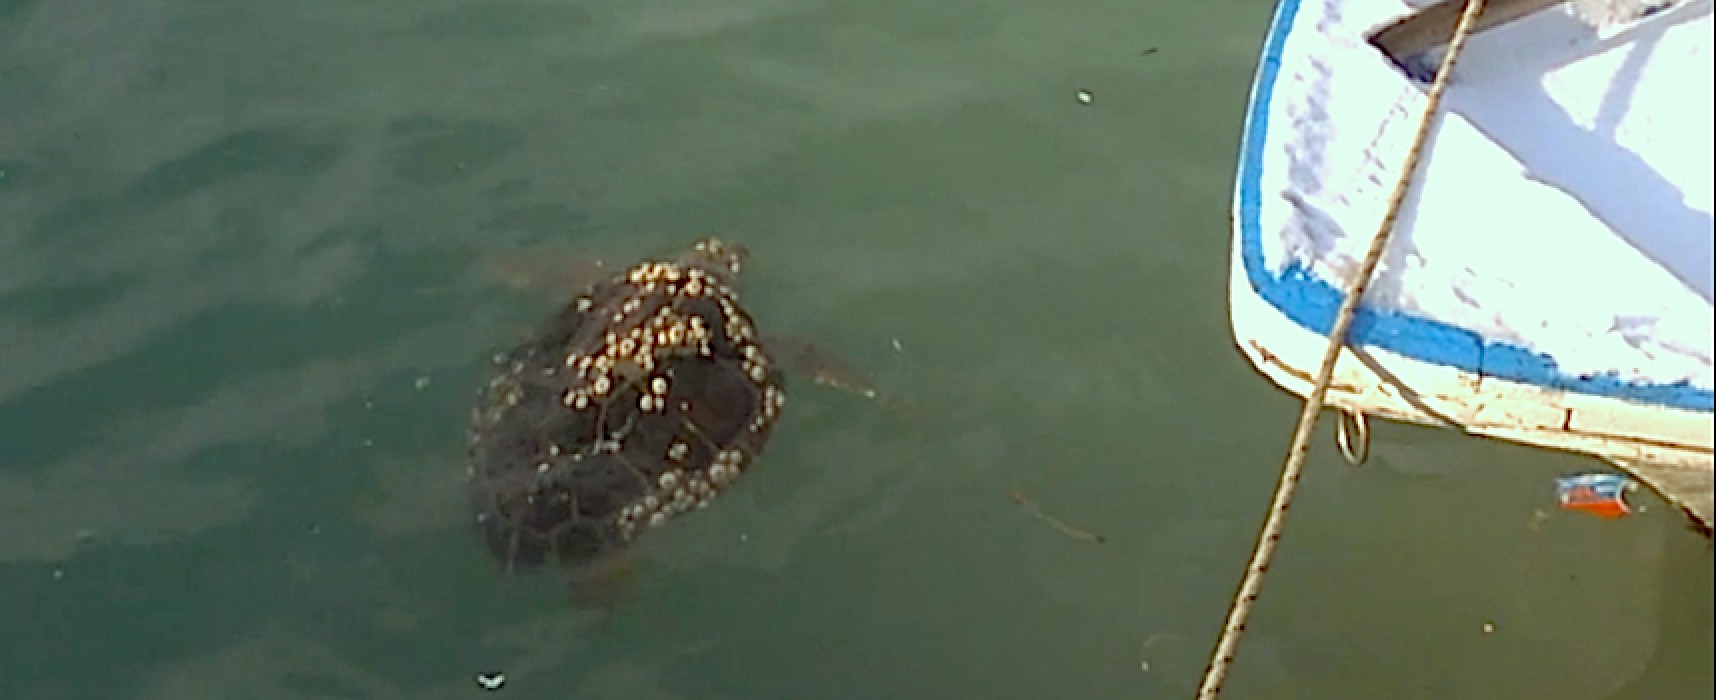 Recuperate due tartarughe nel porto grazie a segnalazione di cittadini. Una in gravi condizioni